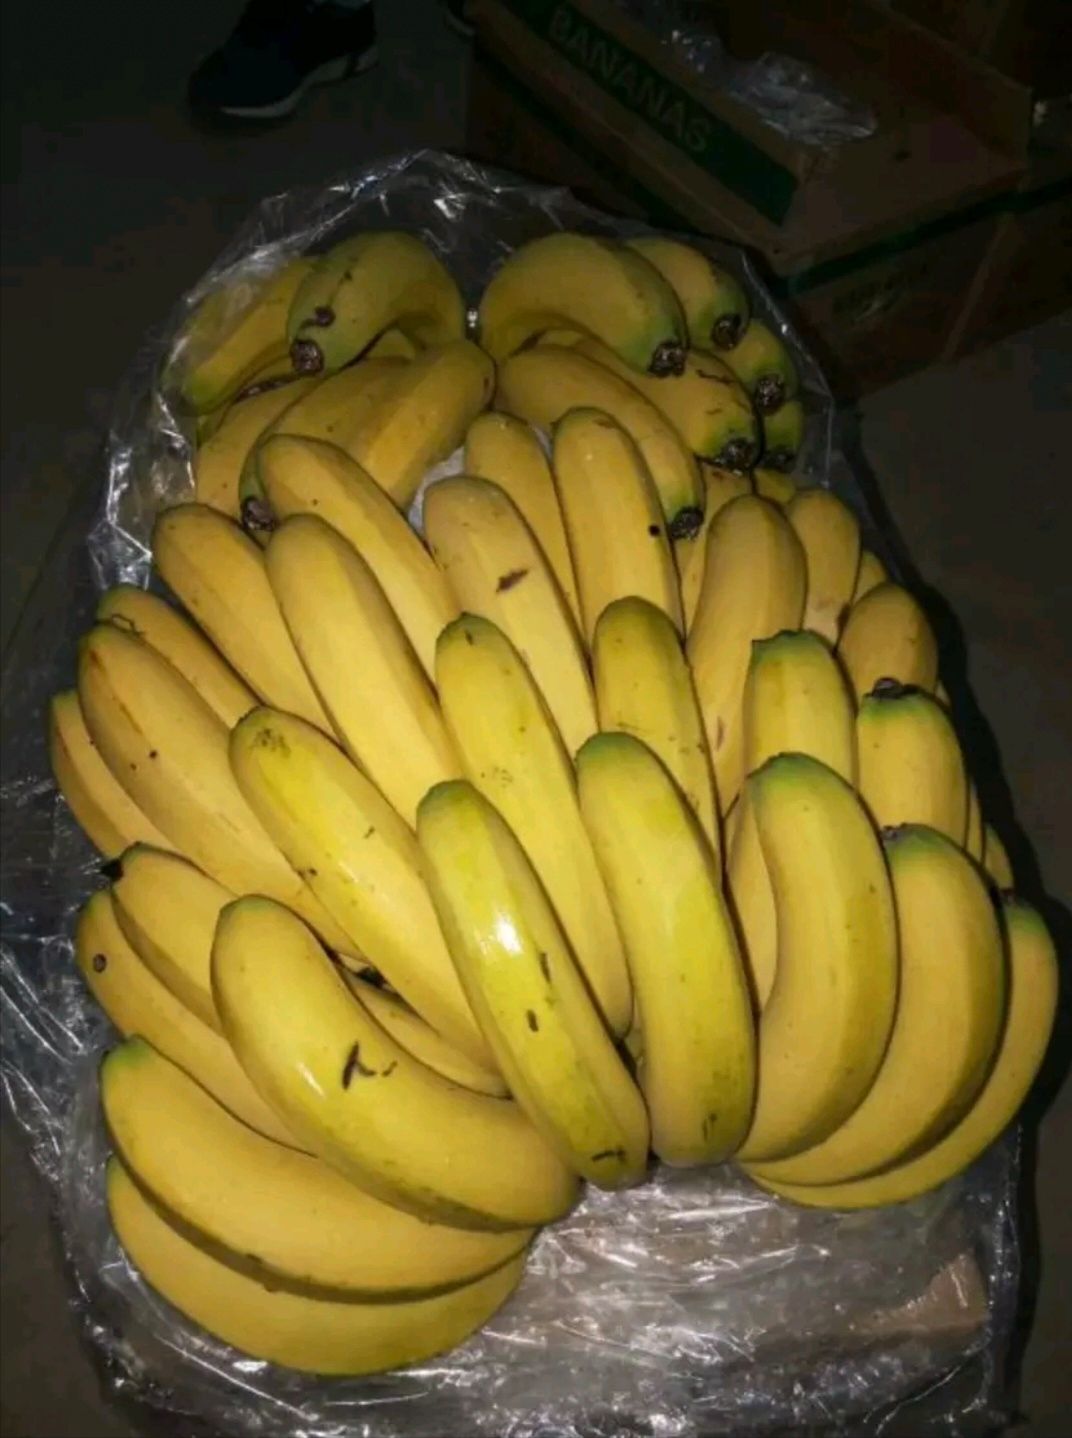  精品香蕉 一箱十八斤 口感甜糯 果面干净 不黑心 肥度够